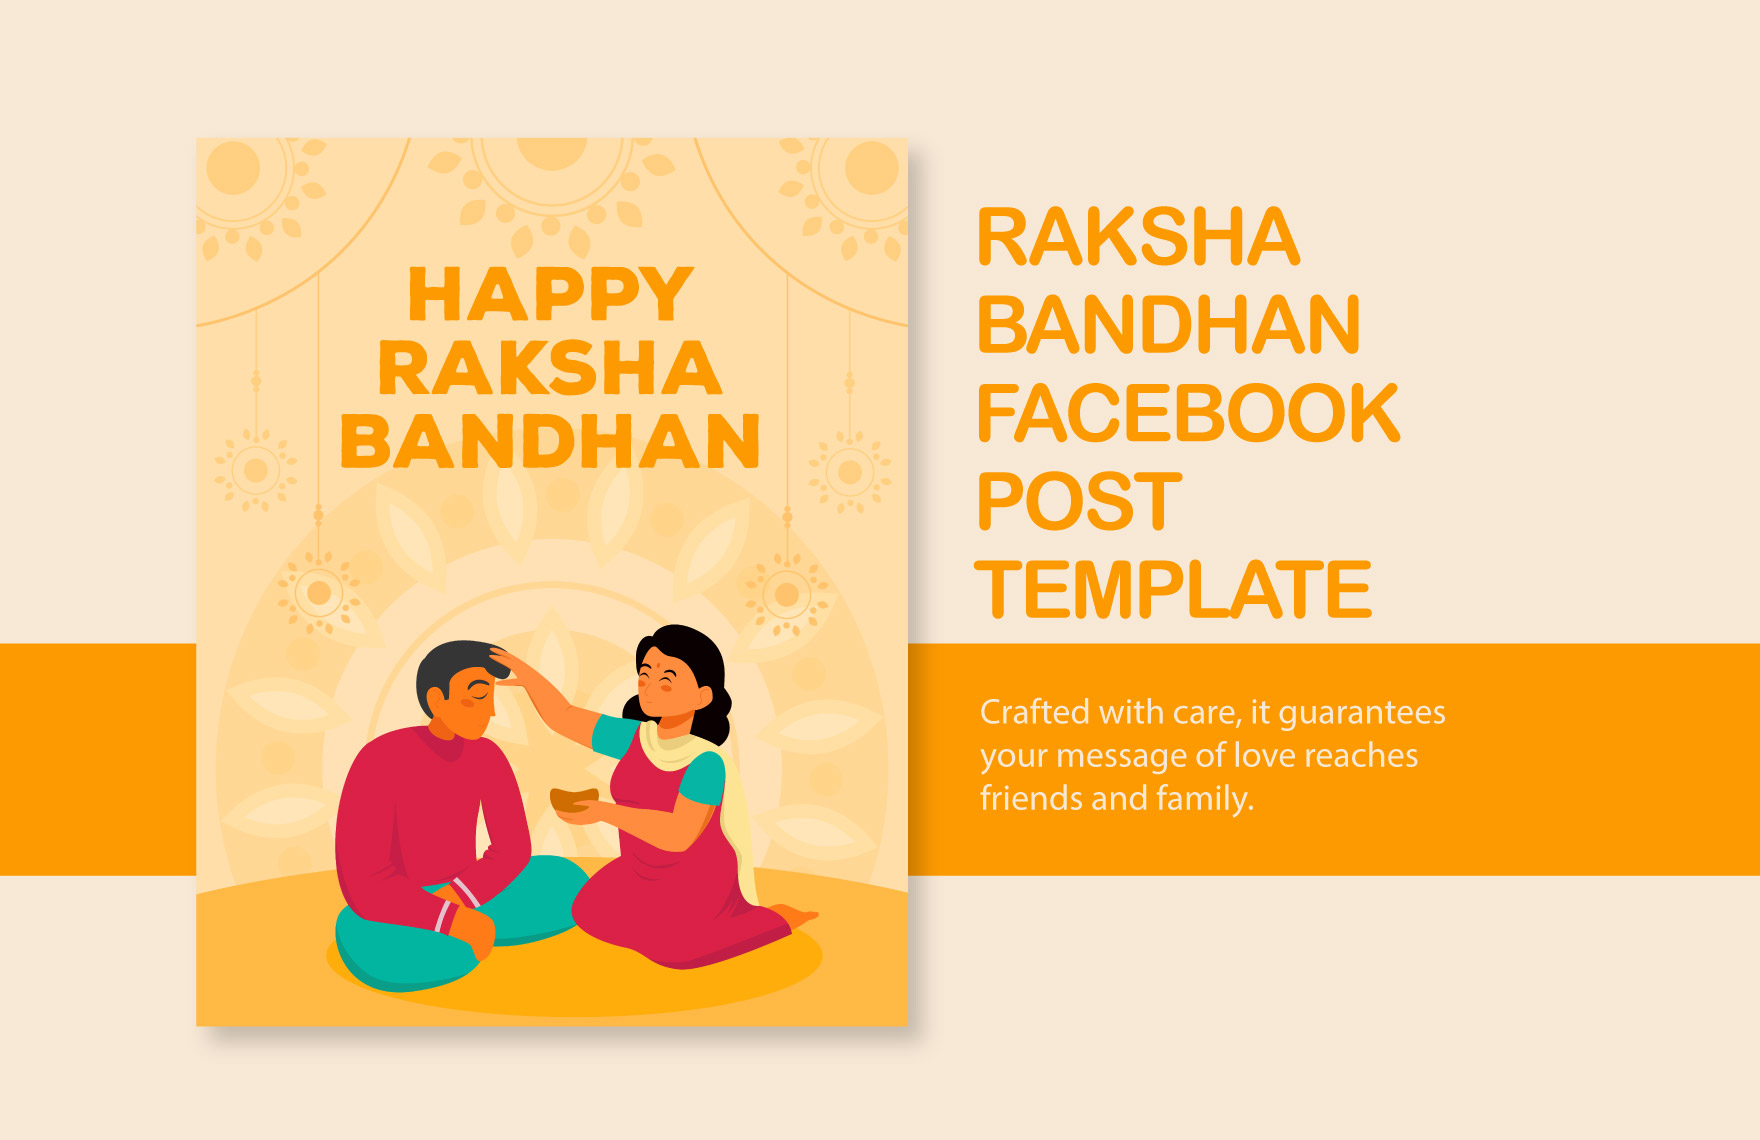 Raksha Bandhan Facebook Post Template